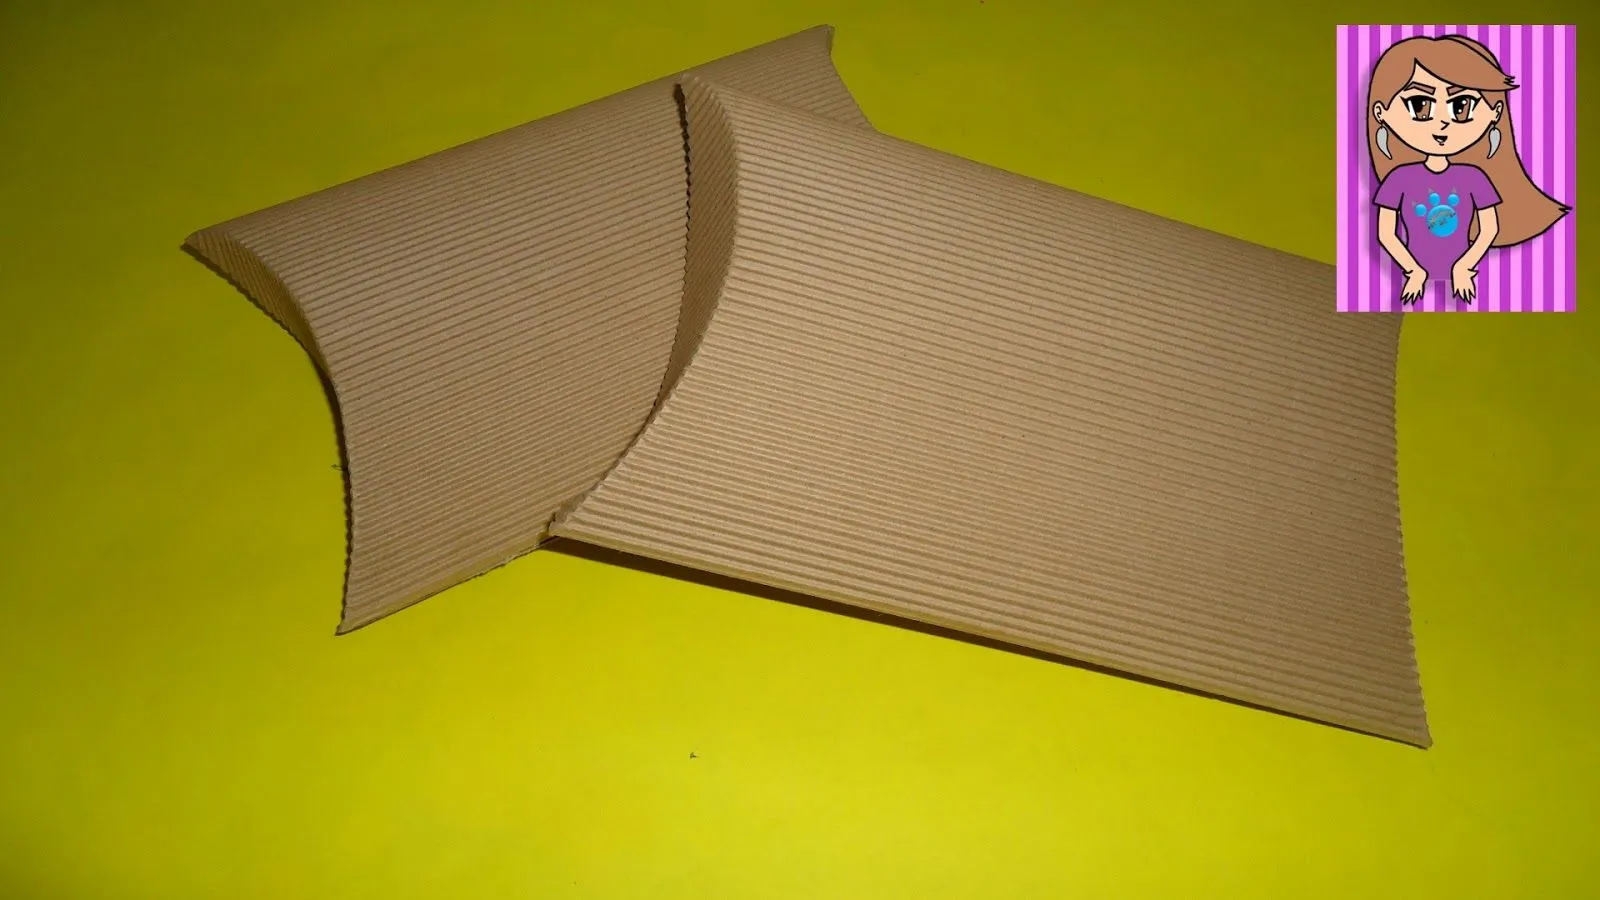 PumitaNegraArt: Caja ovalada de cartón corrugado